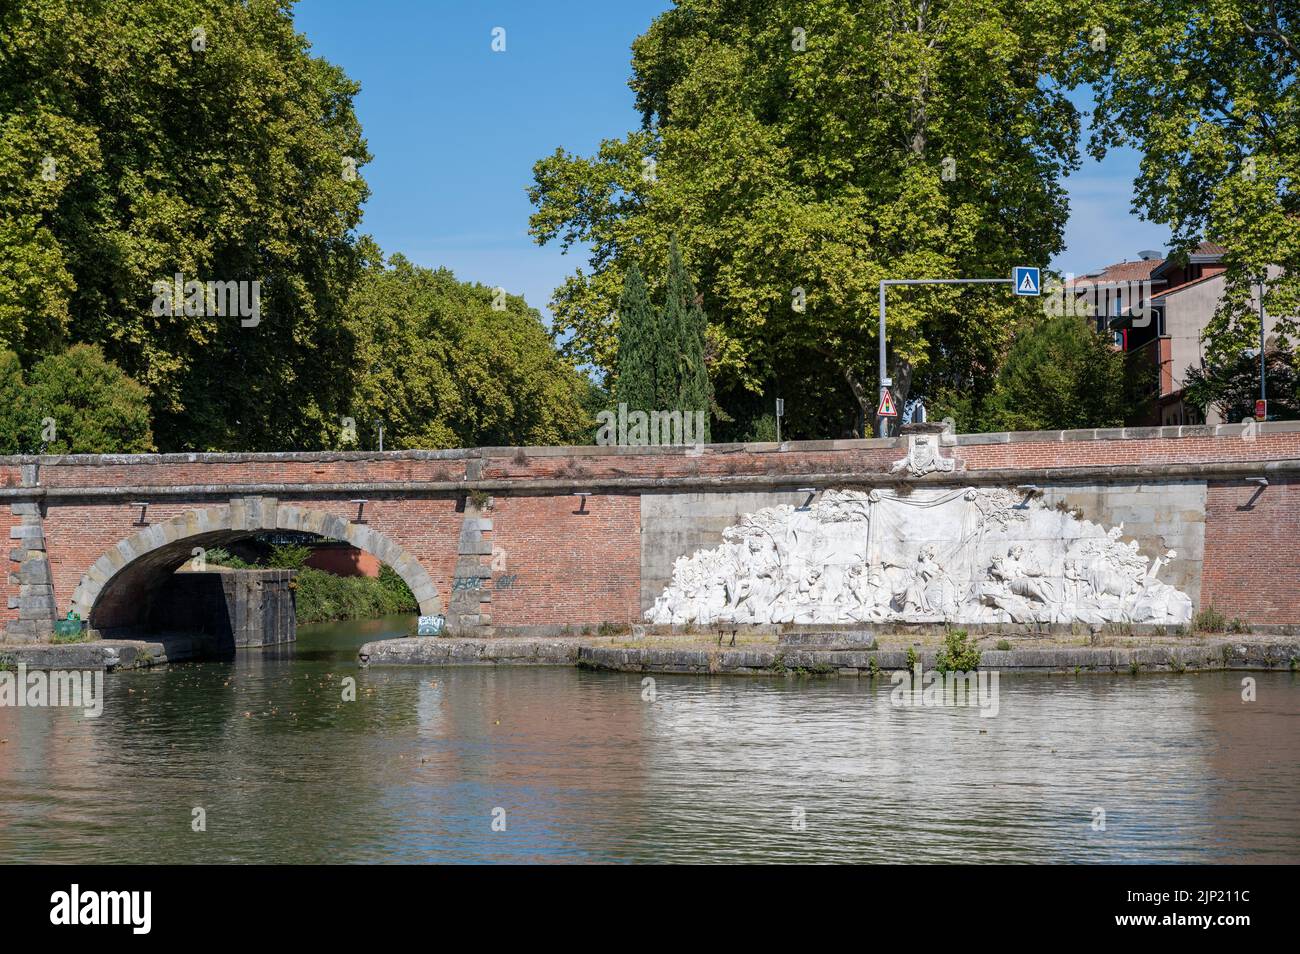 canal du midi, port de l embouchure, Toulouse, France Stock Photo